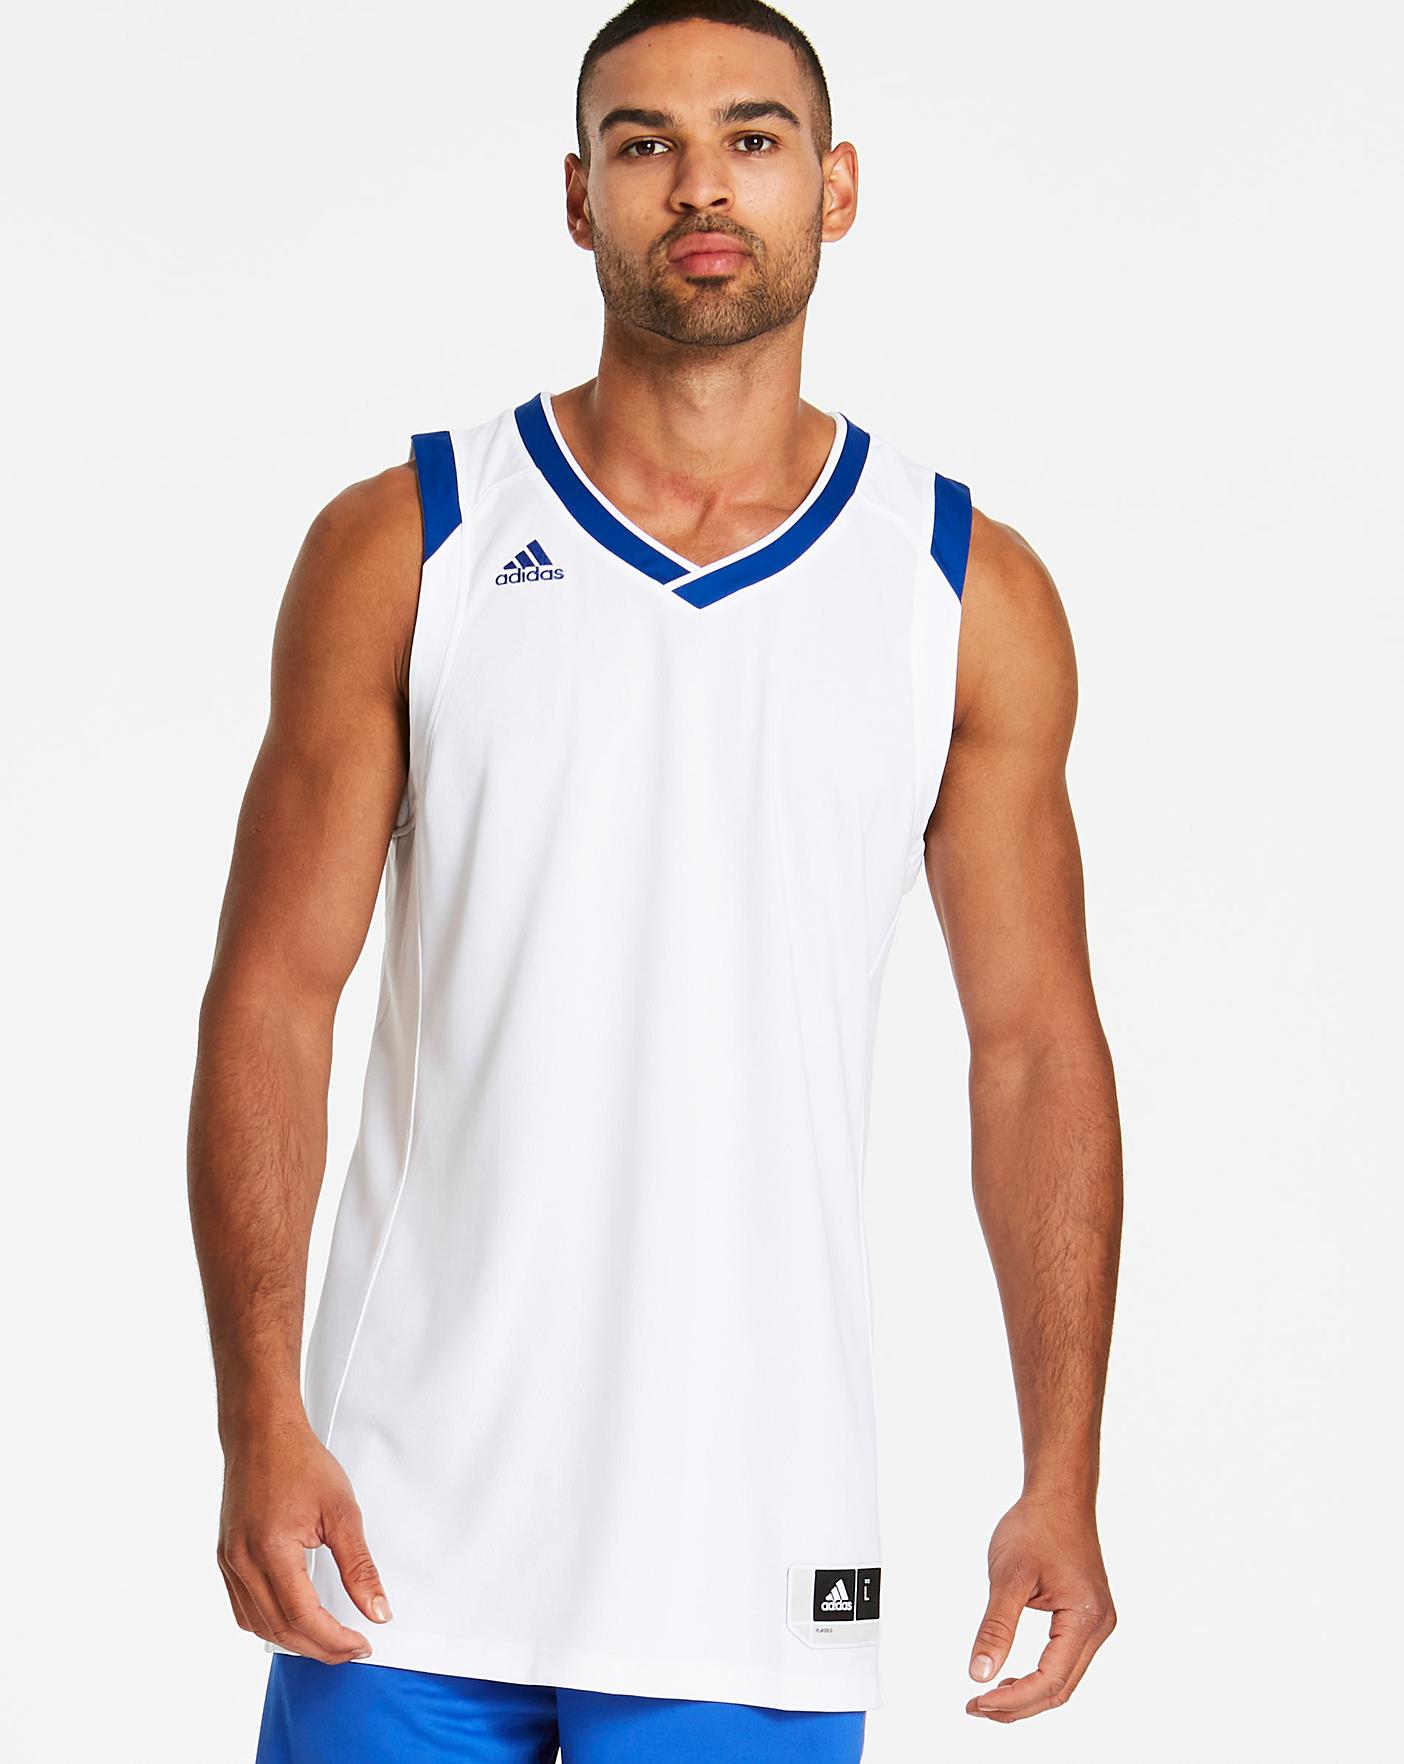 adidas basketball shirt